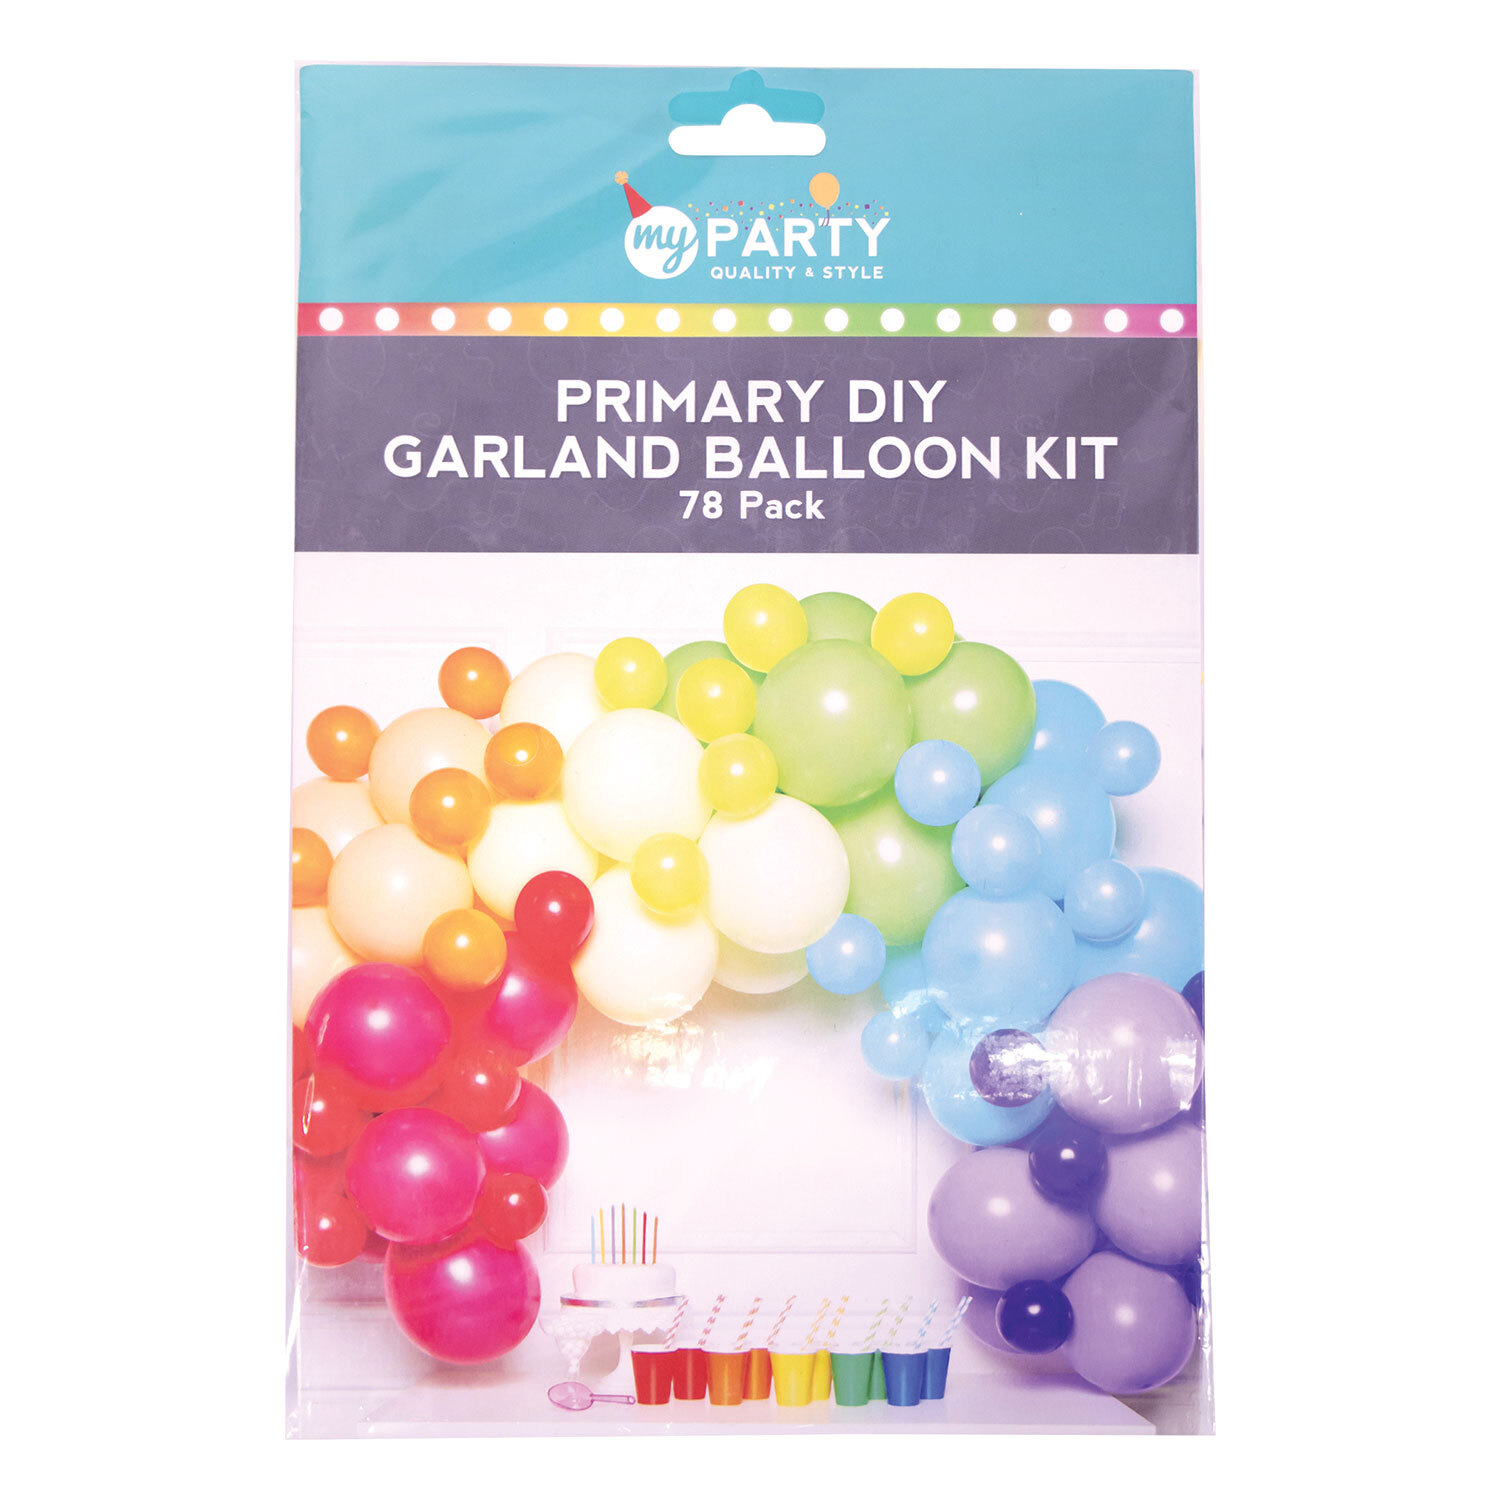 Primary DIY Garland Balloon Kit Image 1